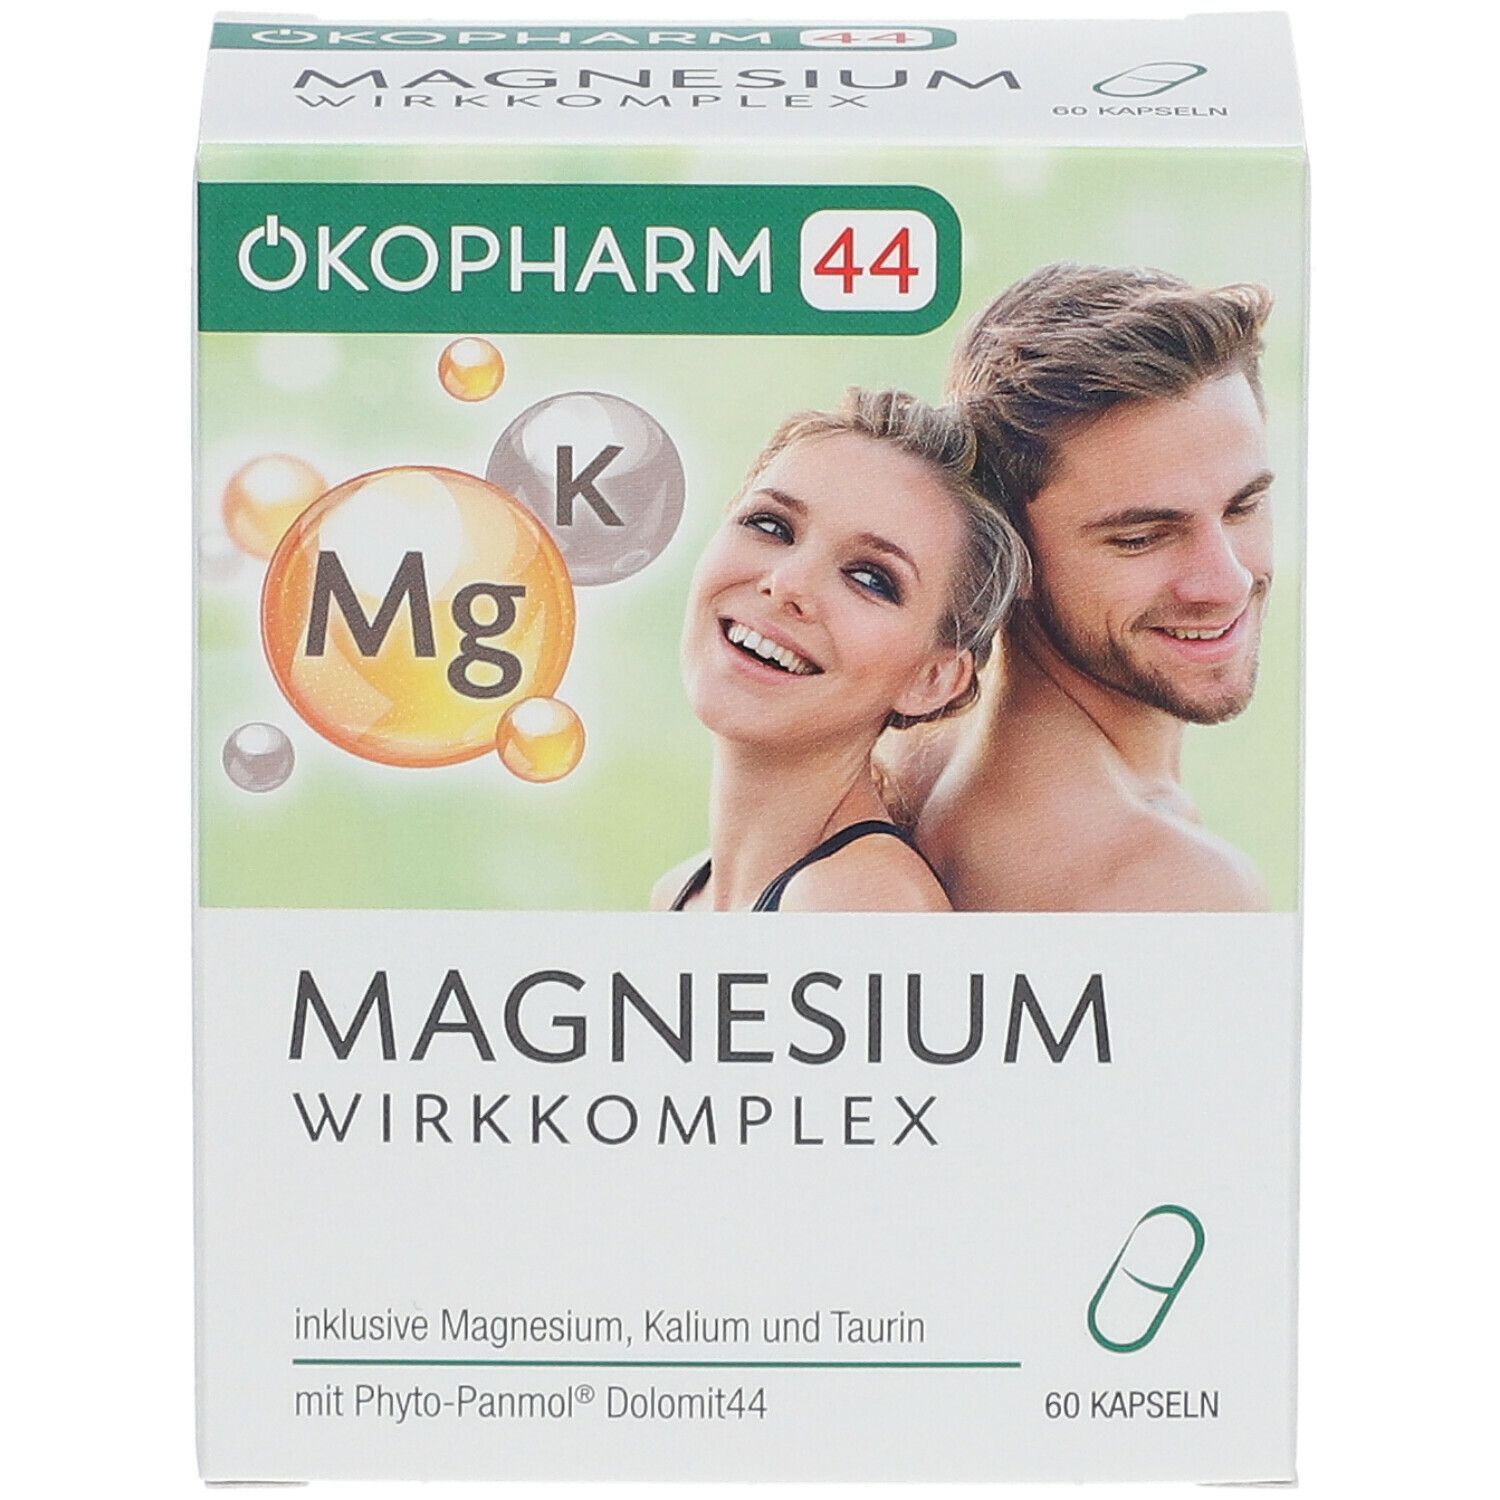 ÖKOPHARM44® MAGNESIUM WIRKKOMPLEX